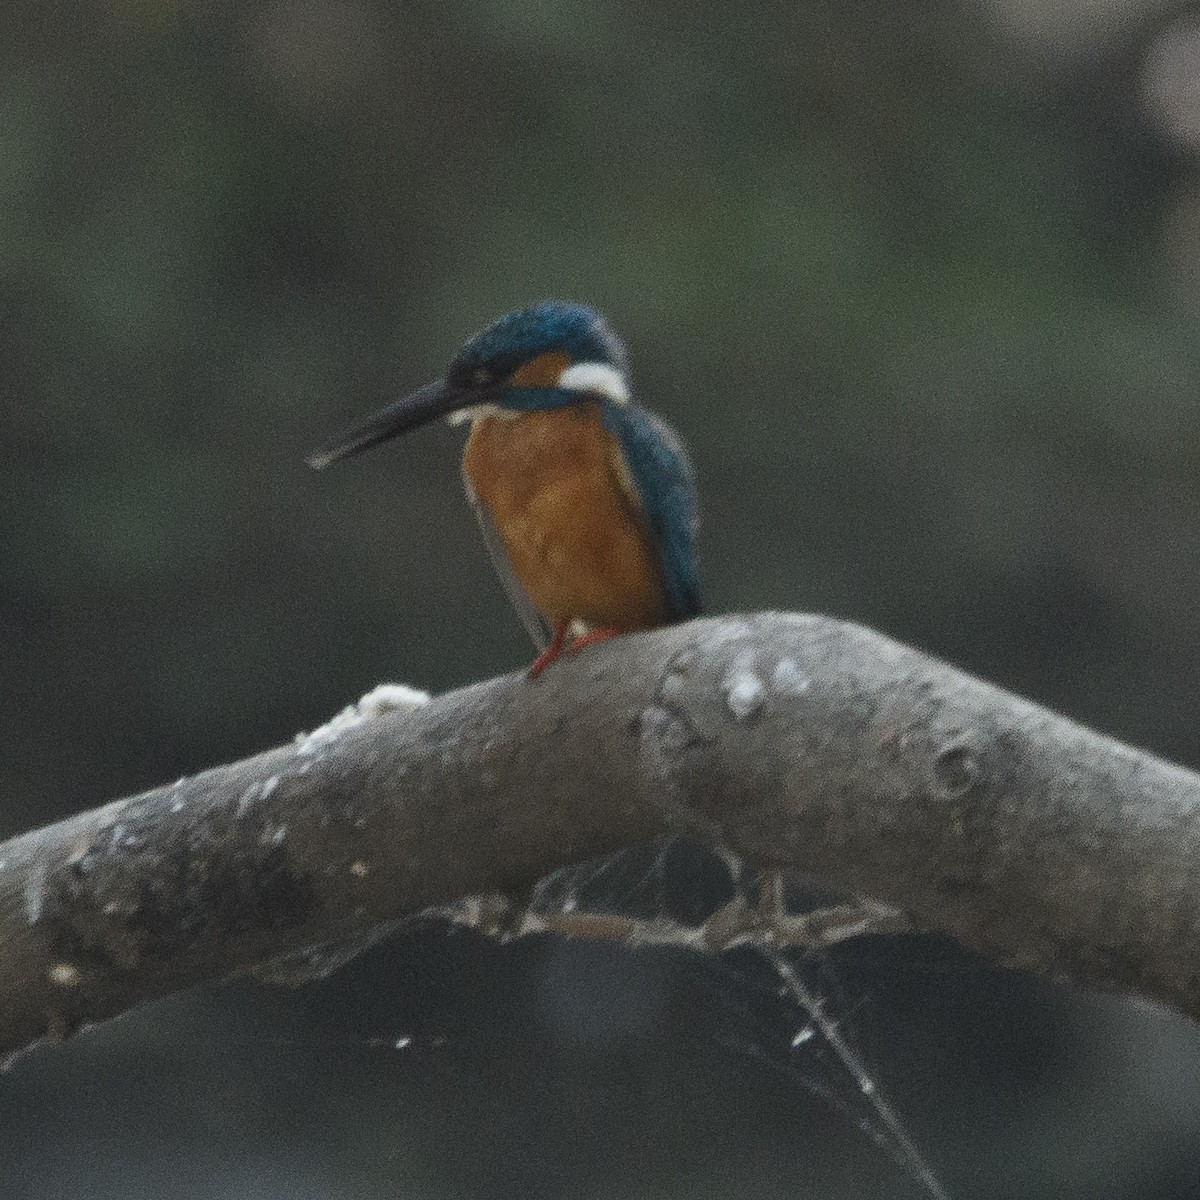 Common Kingfisher - Srinivas Mallela